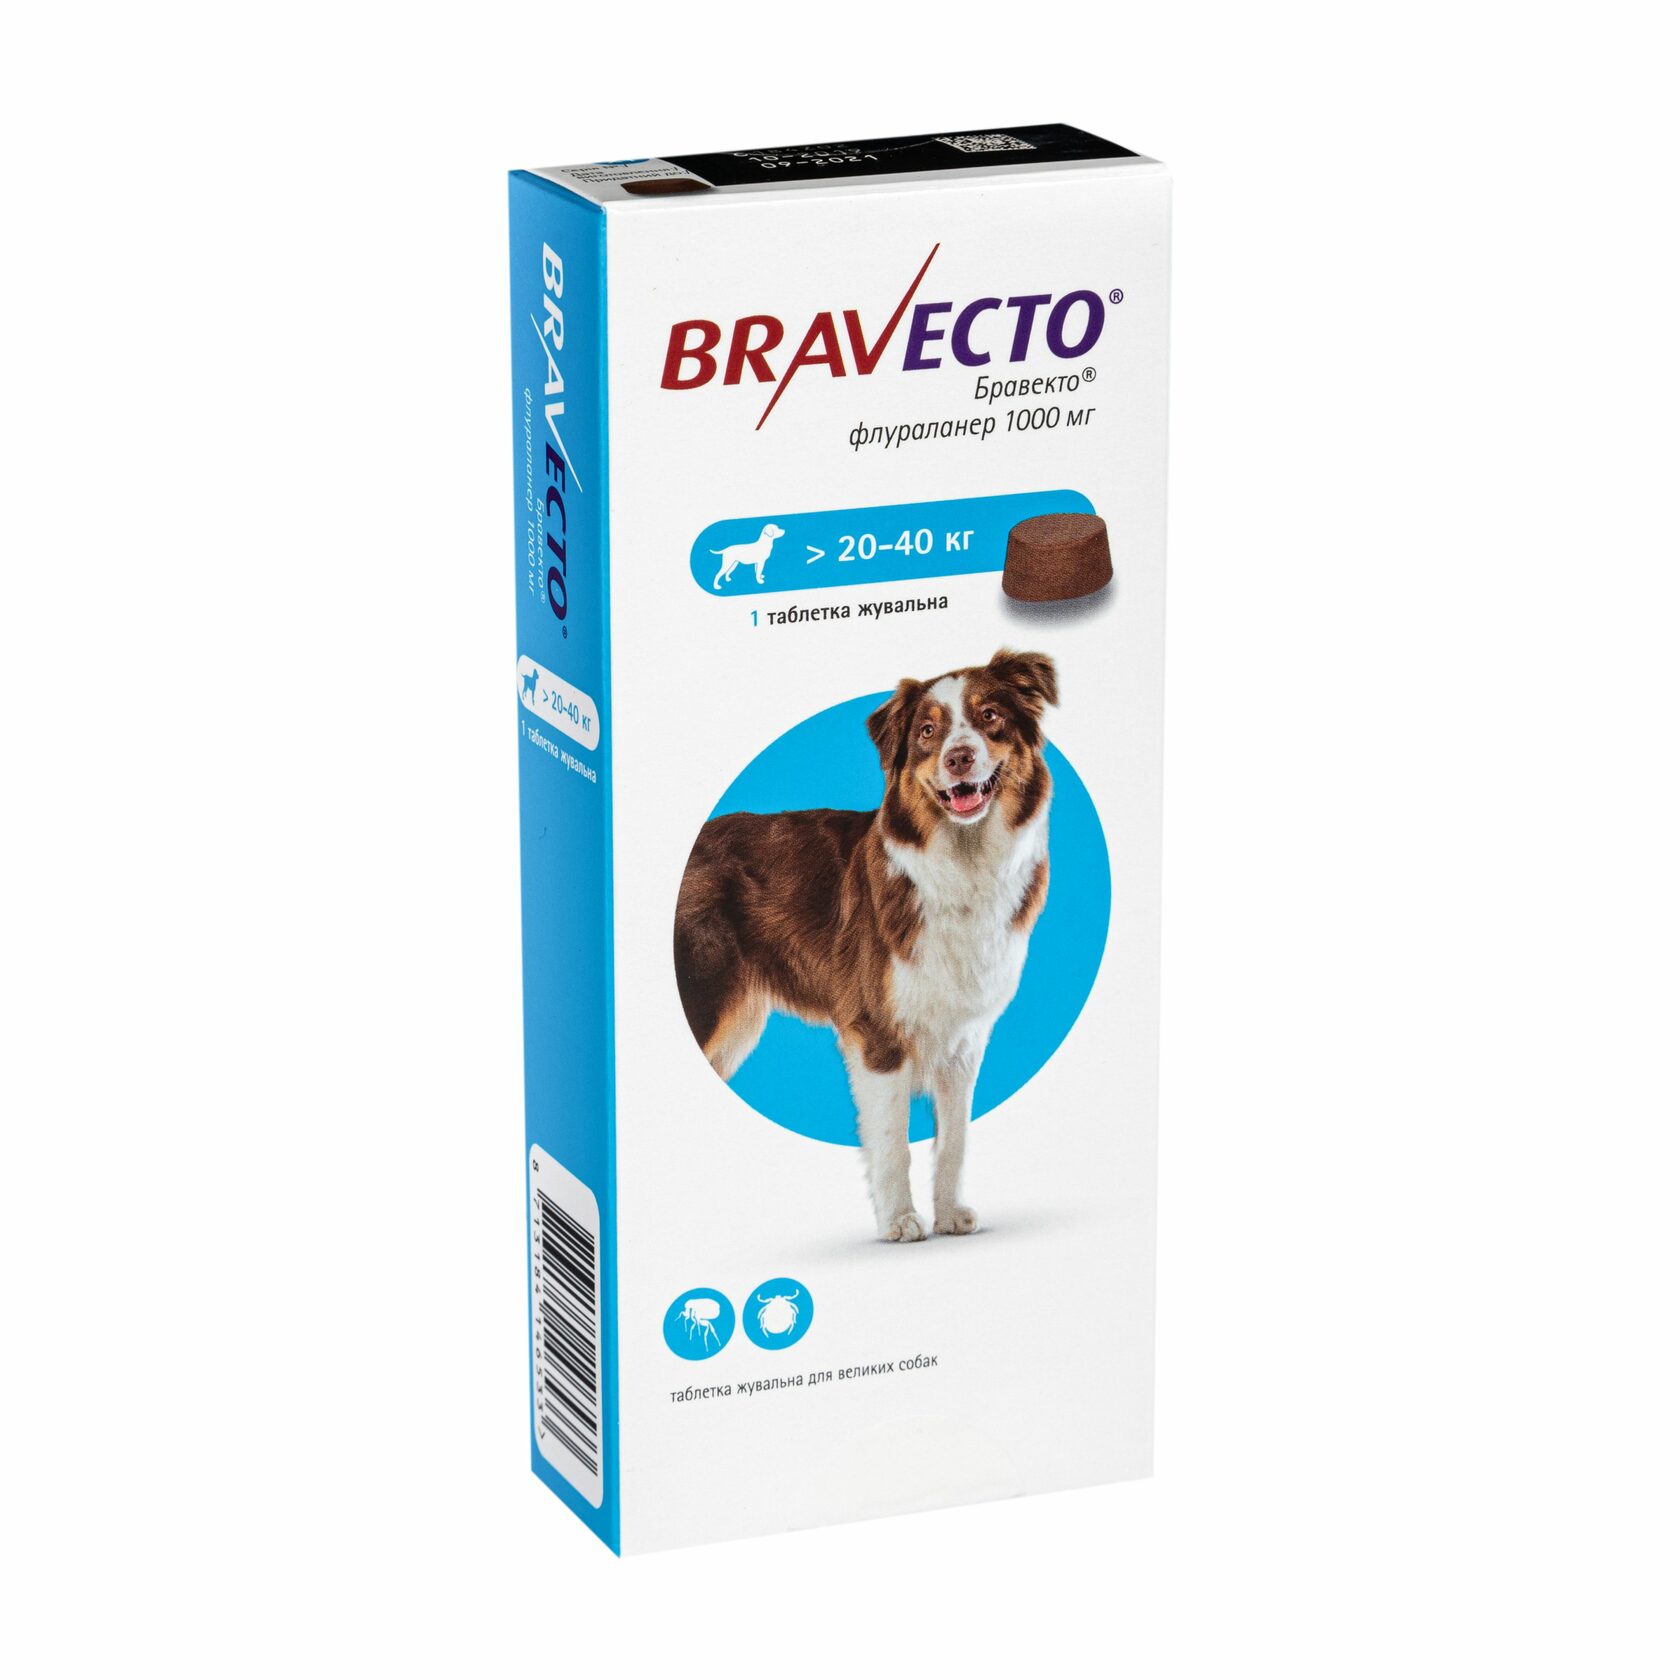 Бравекто купить рязань. Бравекто (MSD animal Health). Таблетки клещей для собак Бравекто. Бравекто для собак 20-40. Бравекто для собак 20-40 кг 1000 мг.